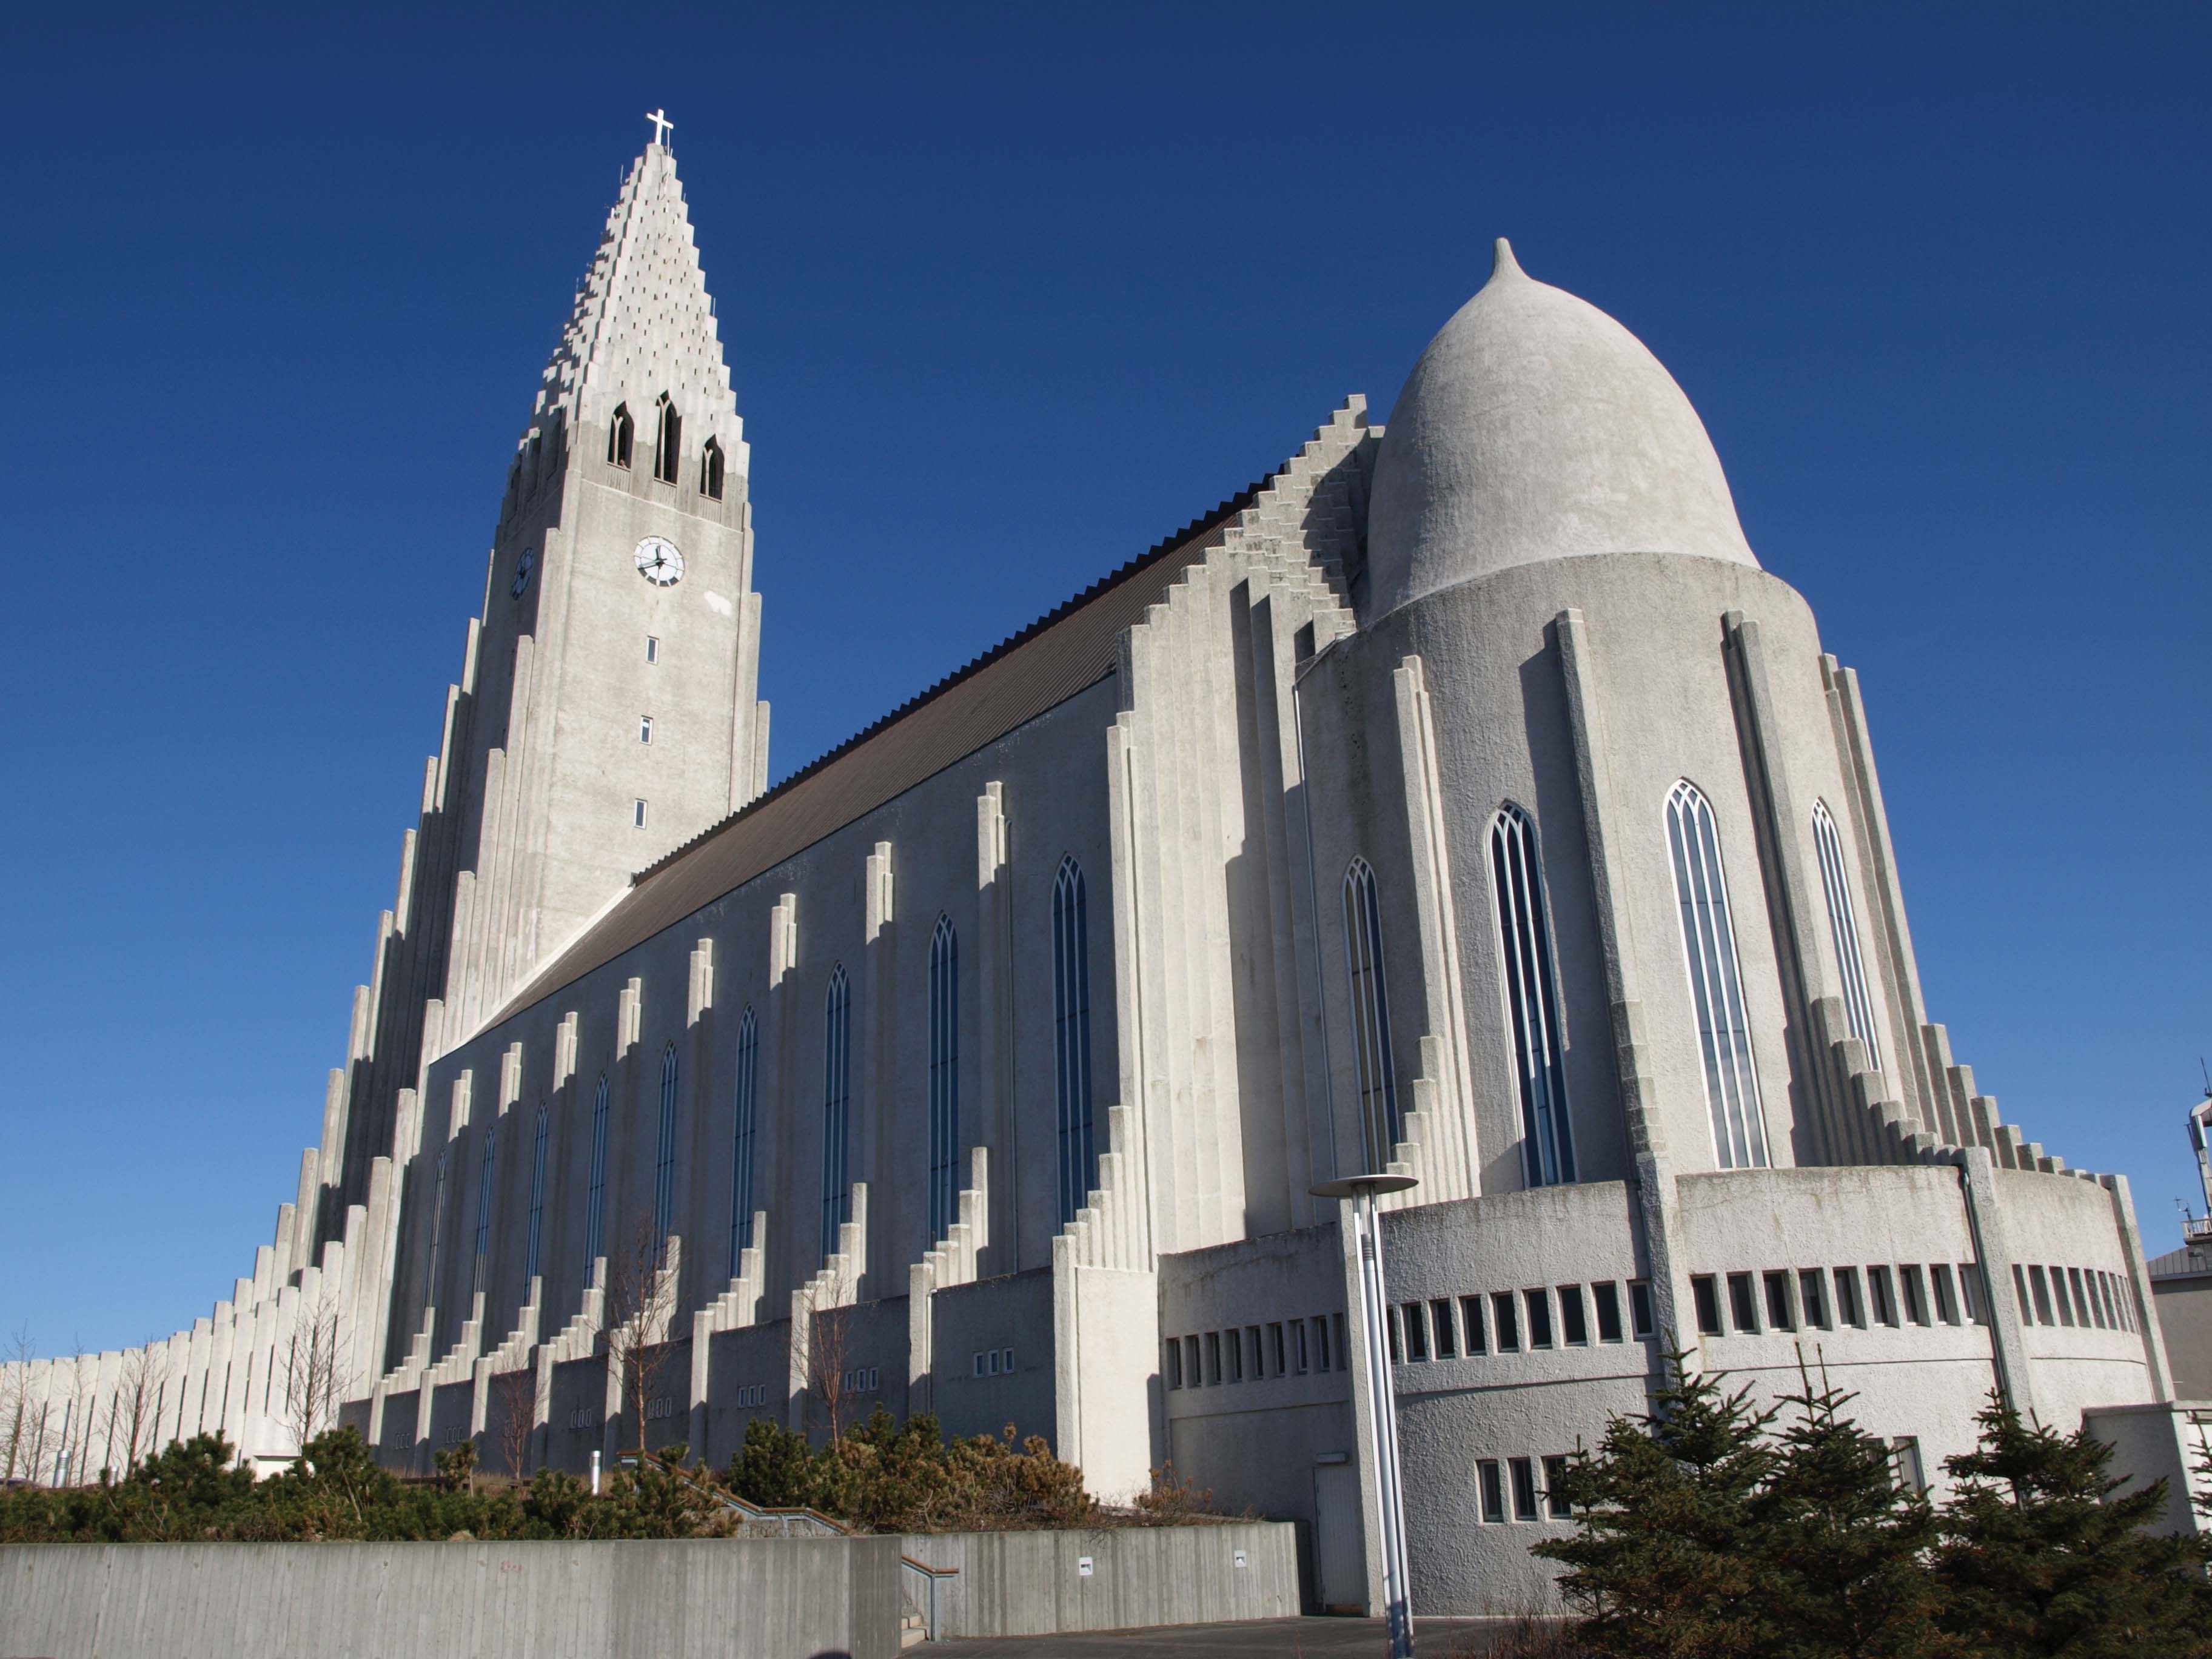 The Hallgrimskirkja in Reykjavik, Iceland, is 244 feet tall and is ...